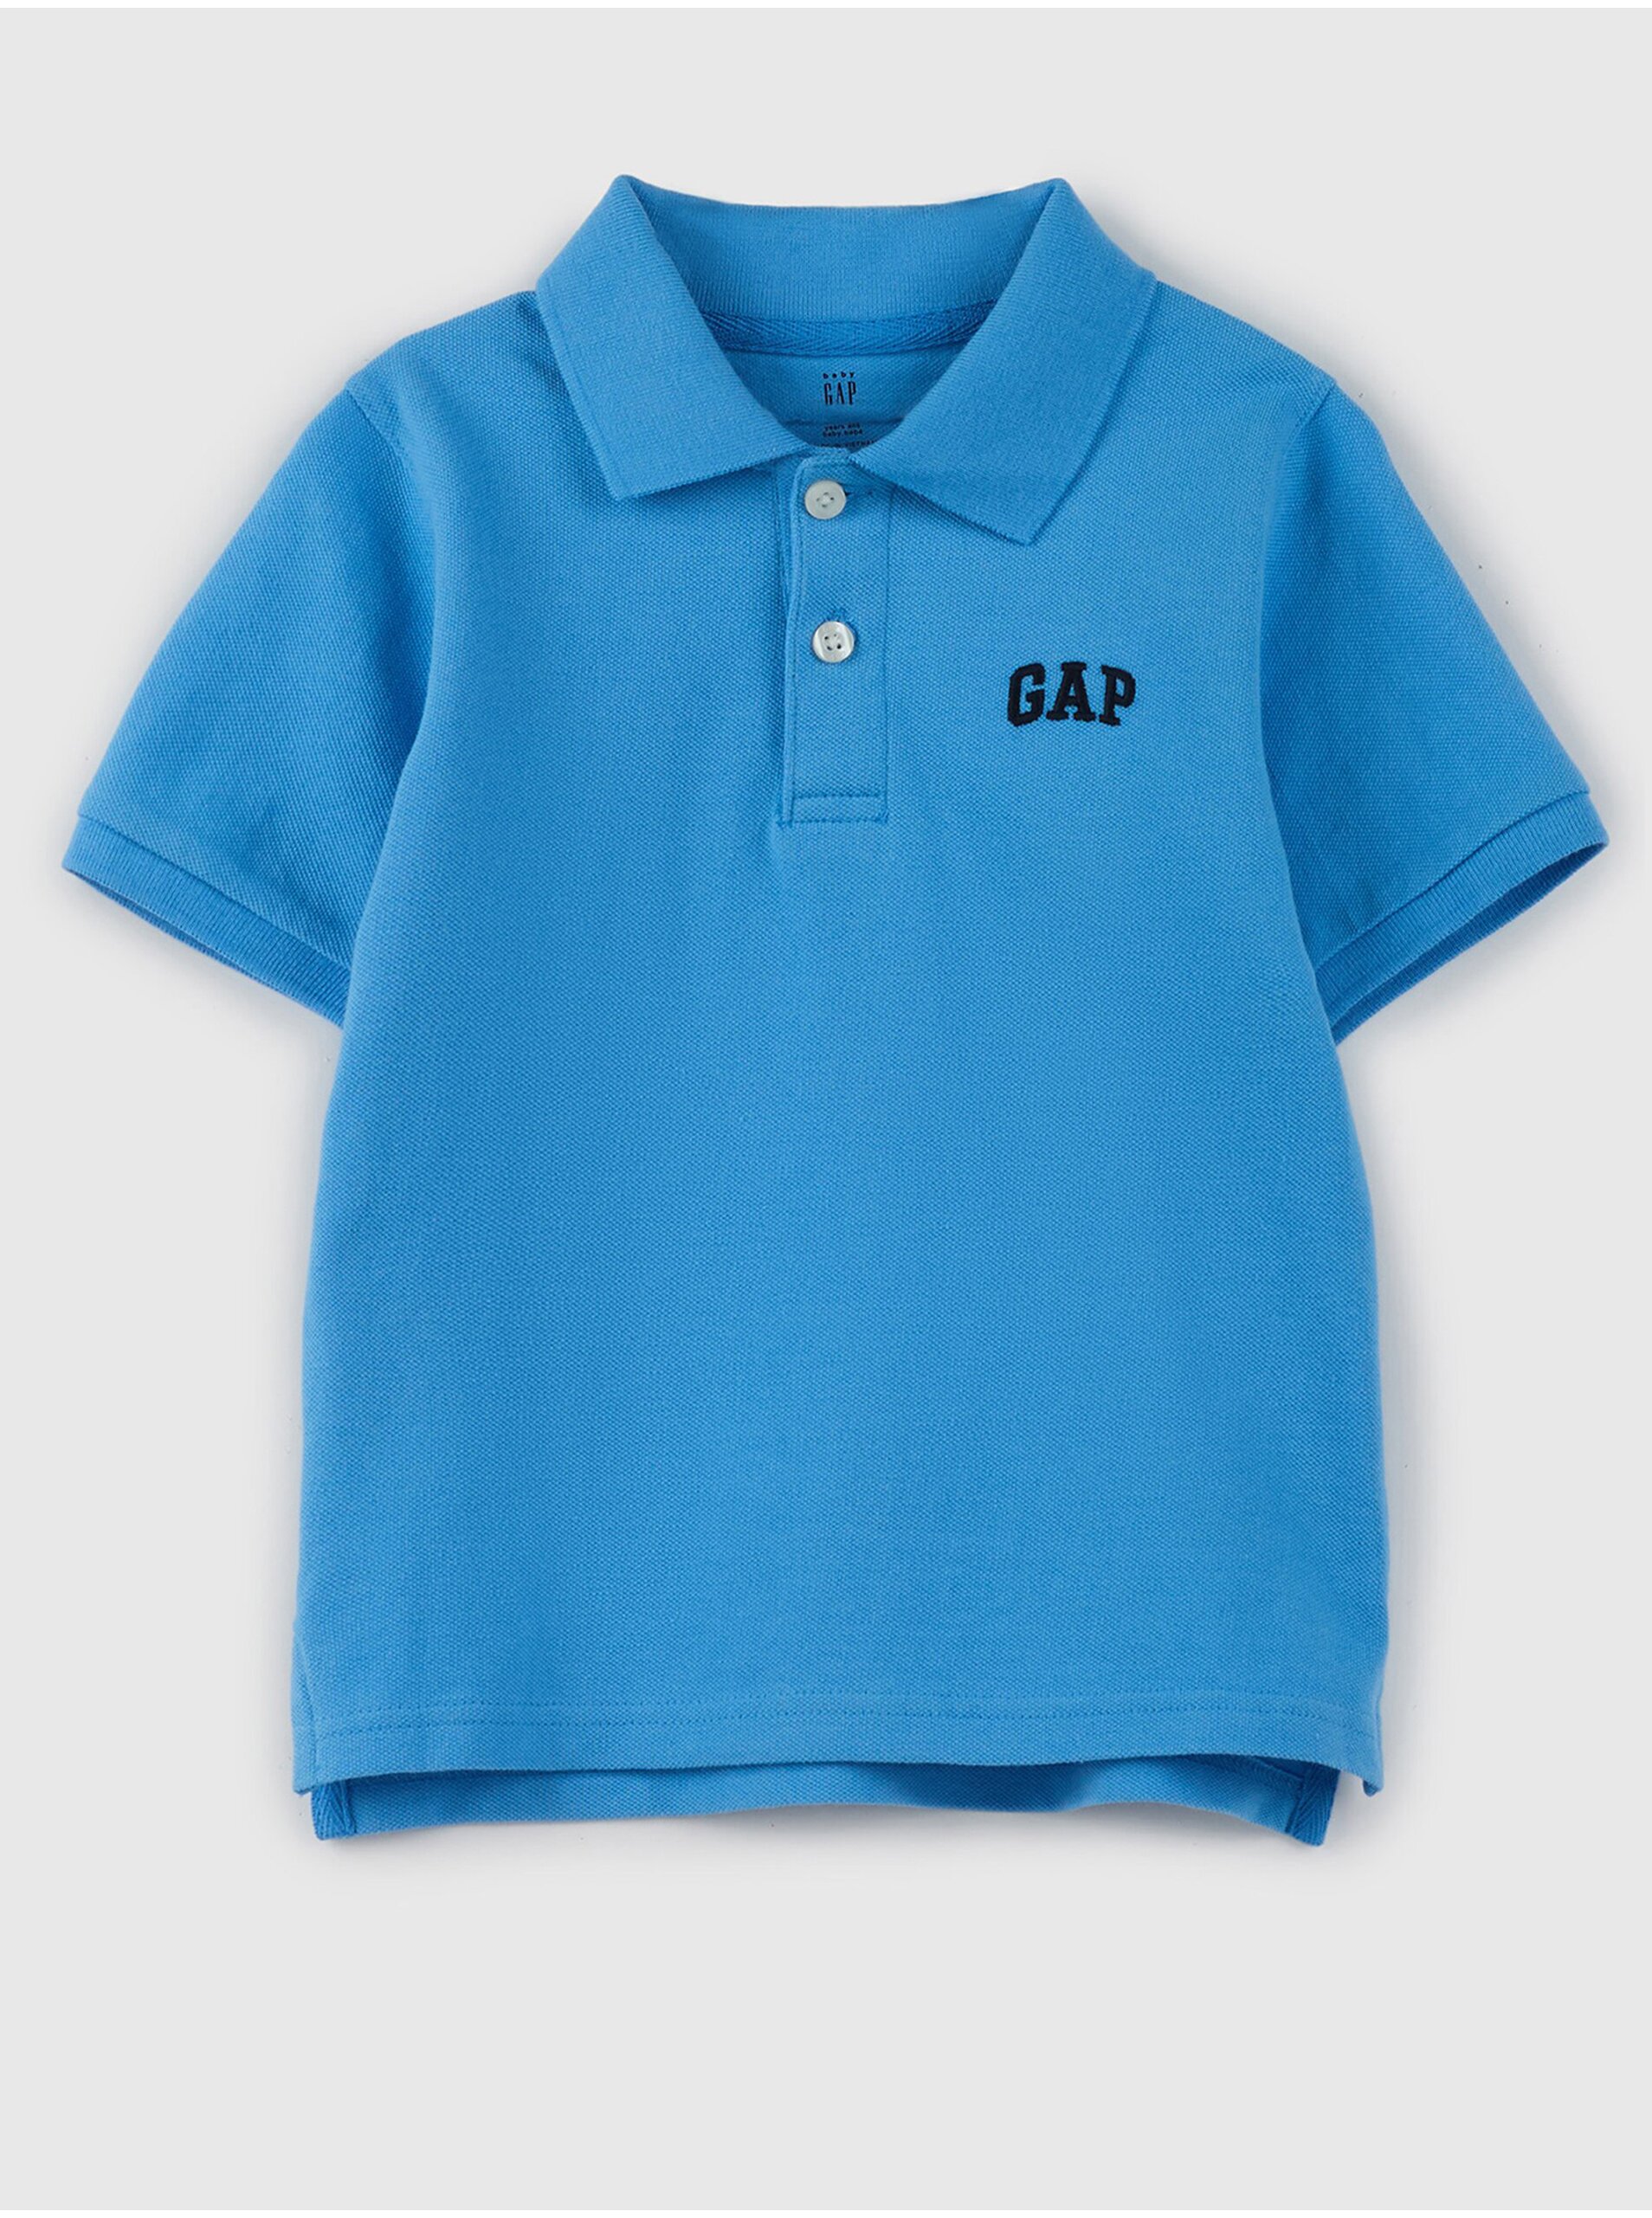 E-shop Modré klučičí polo tričko s logem GAP